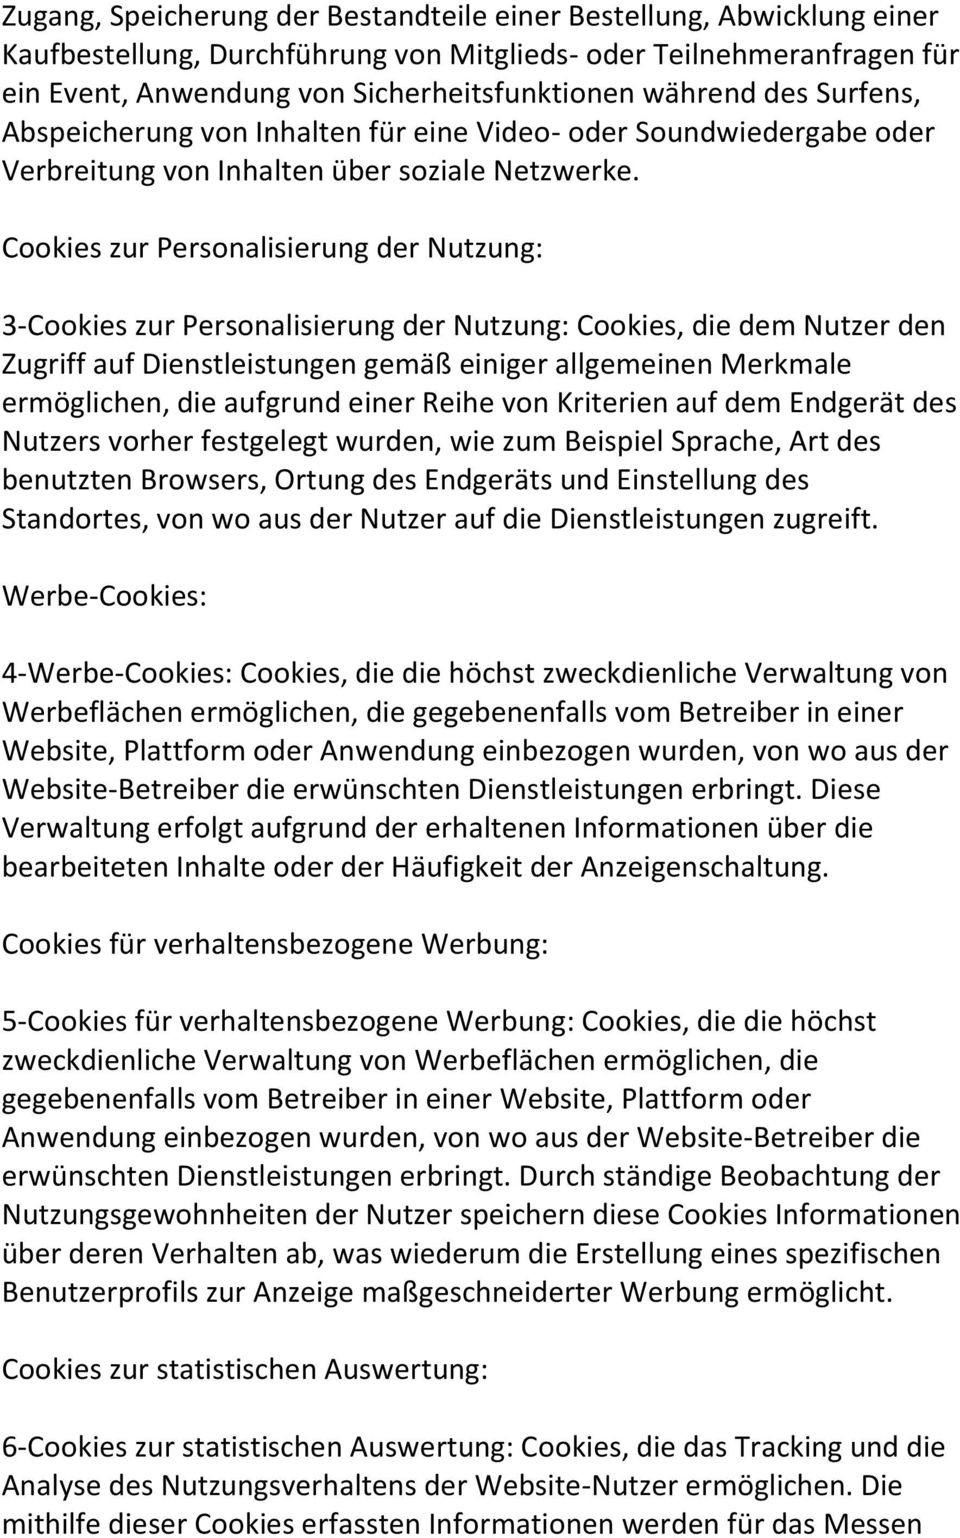 Cookies zur Personalisierung der Nutzung: 3-Cookies zur Personalisierung der Nutzung: Cookies, die dem Nutzer den Zugriff auf Dienstleistungen gemäß einiger allgemeinen Merkmale ermöglichen, die